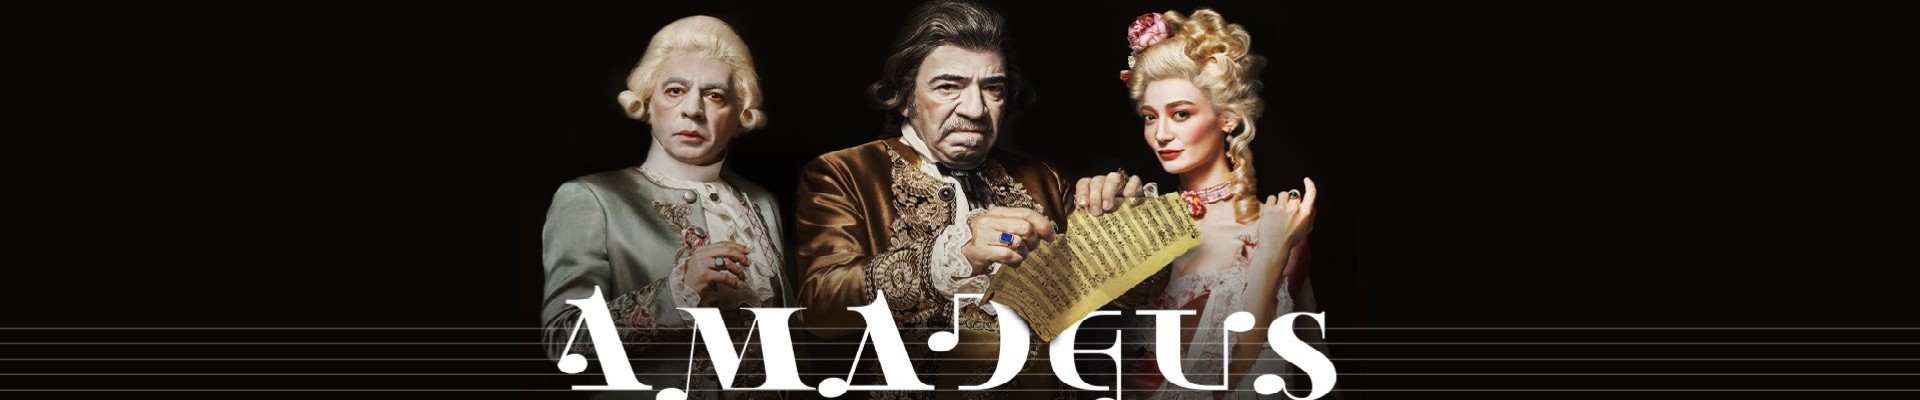 Amadeus Tiyatro Biletleri